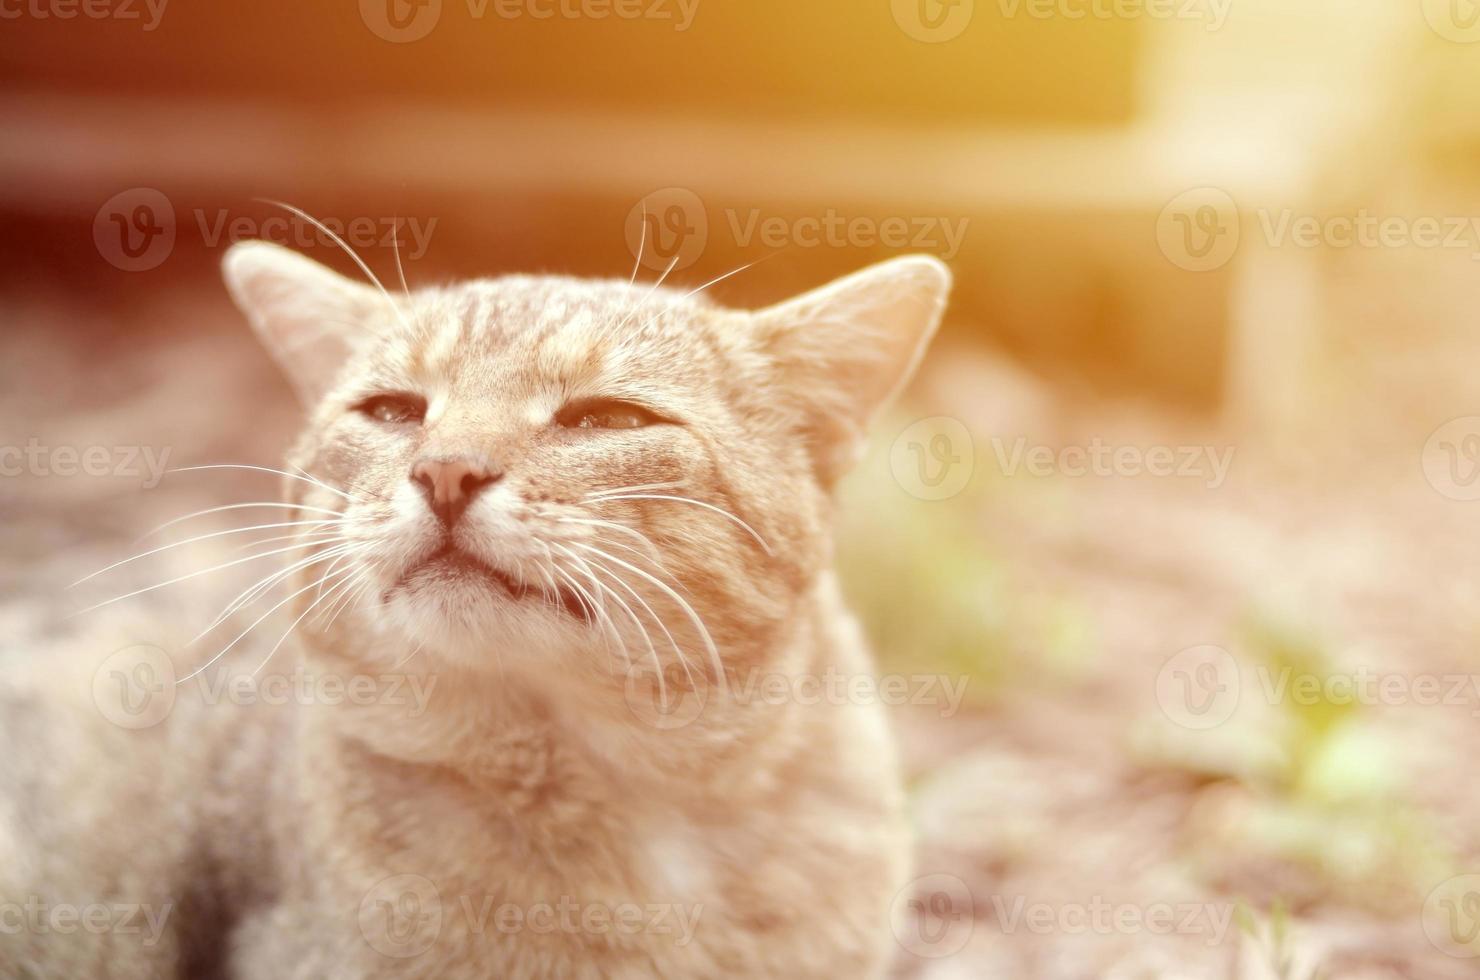 ledsen munkorg porträtt av en grå randig tabby katt med grön ögon, selektiv fokus foto